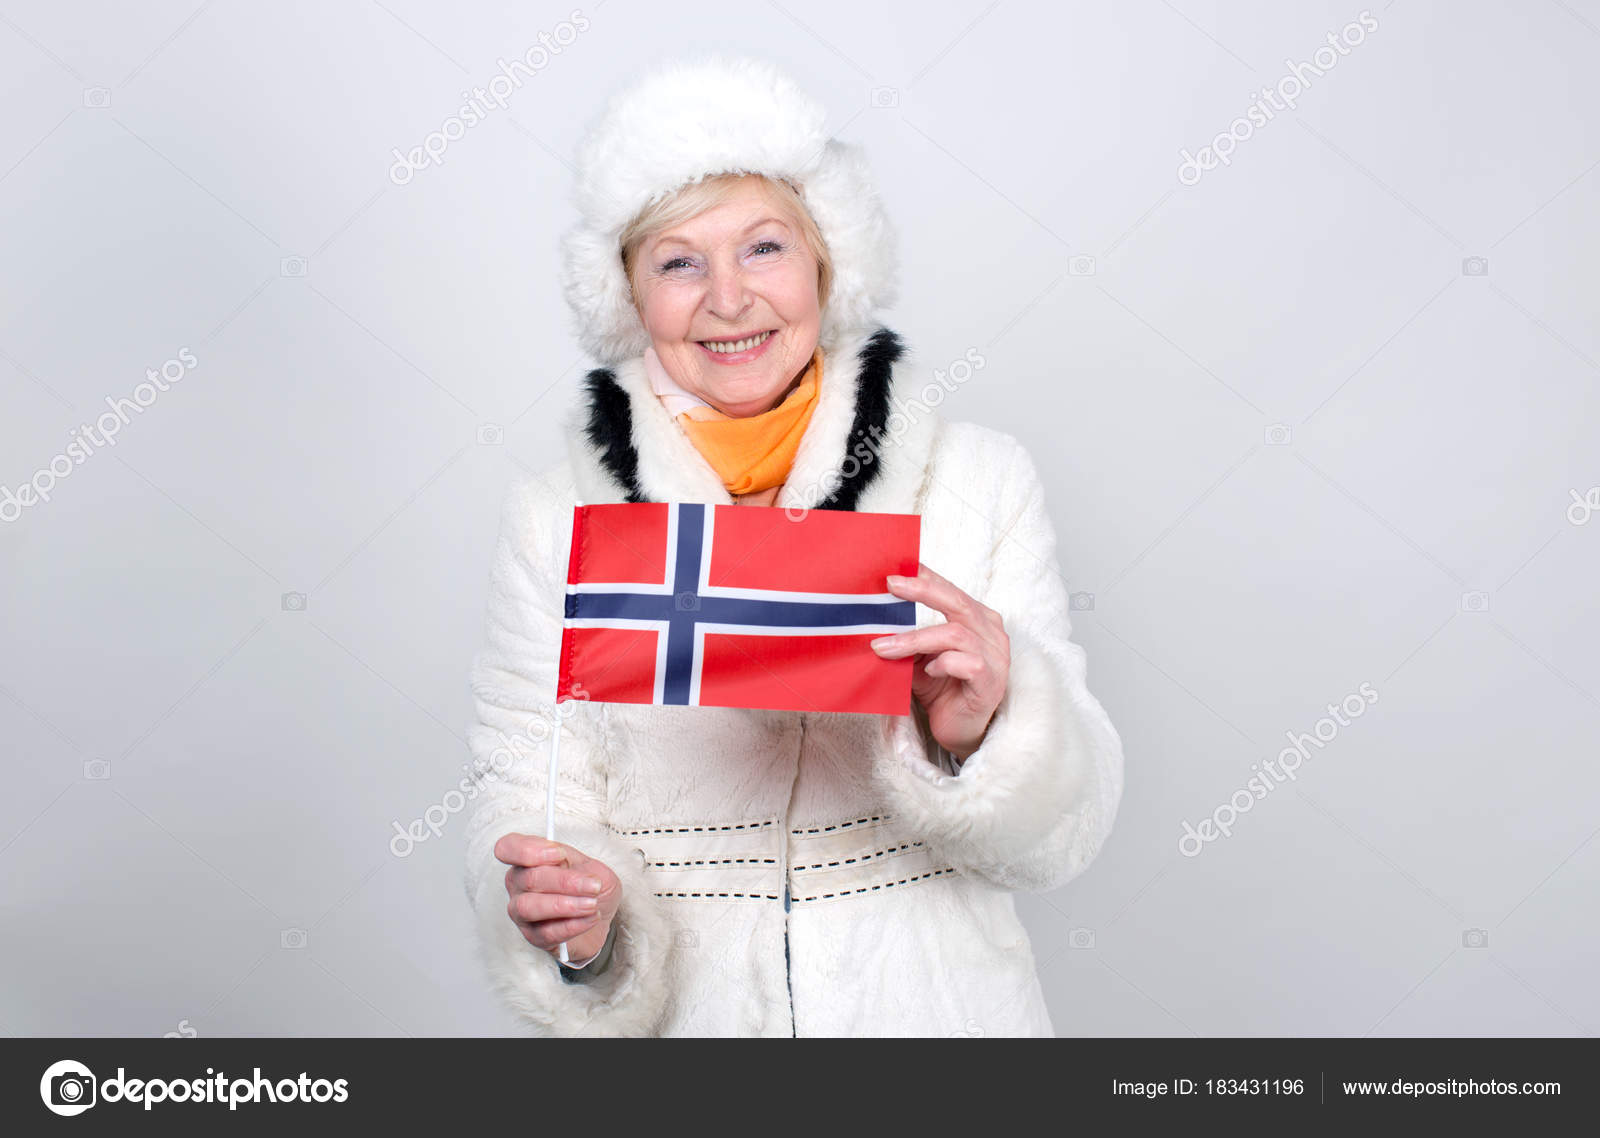 Международный Сайт Знакомств В Норвегии